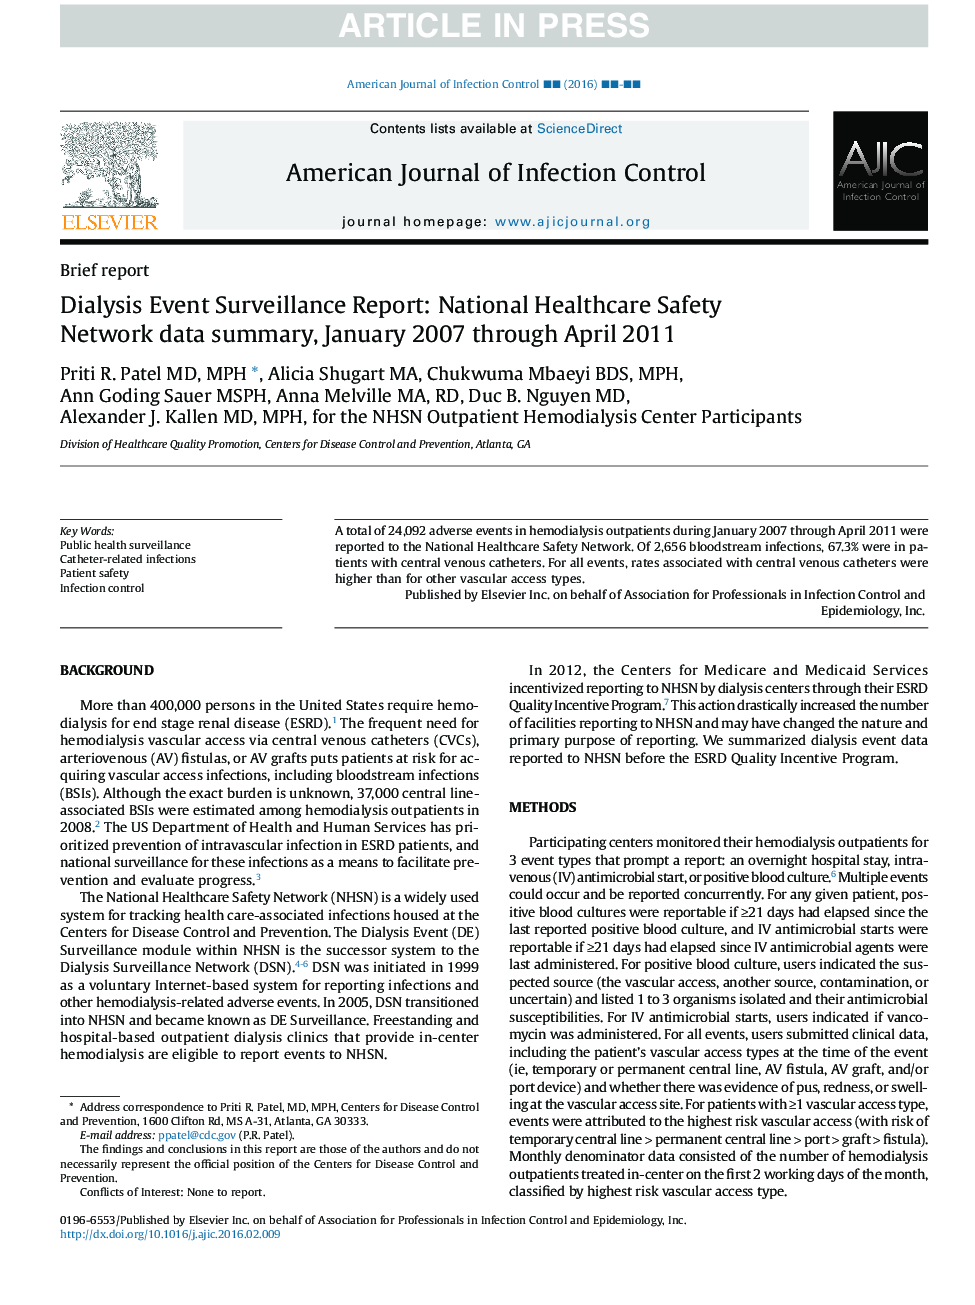 گزارشات نظارت بر رویداد دیالیز: خلاصه اطلاعات شبکه امنیت ملی بهداشت، ژانویه 2007 تا آوریل 2011 